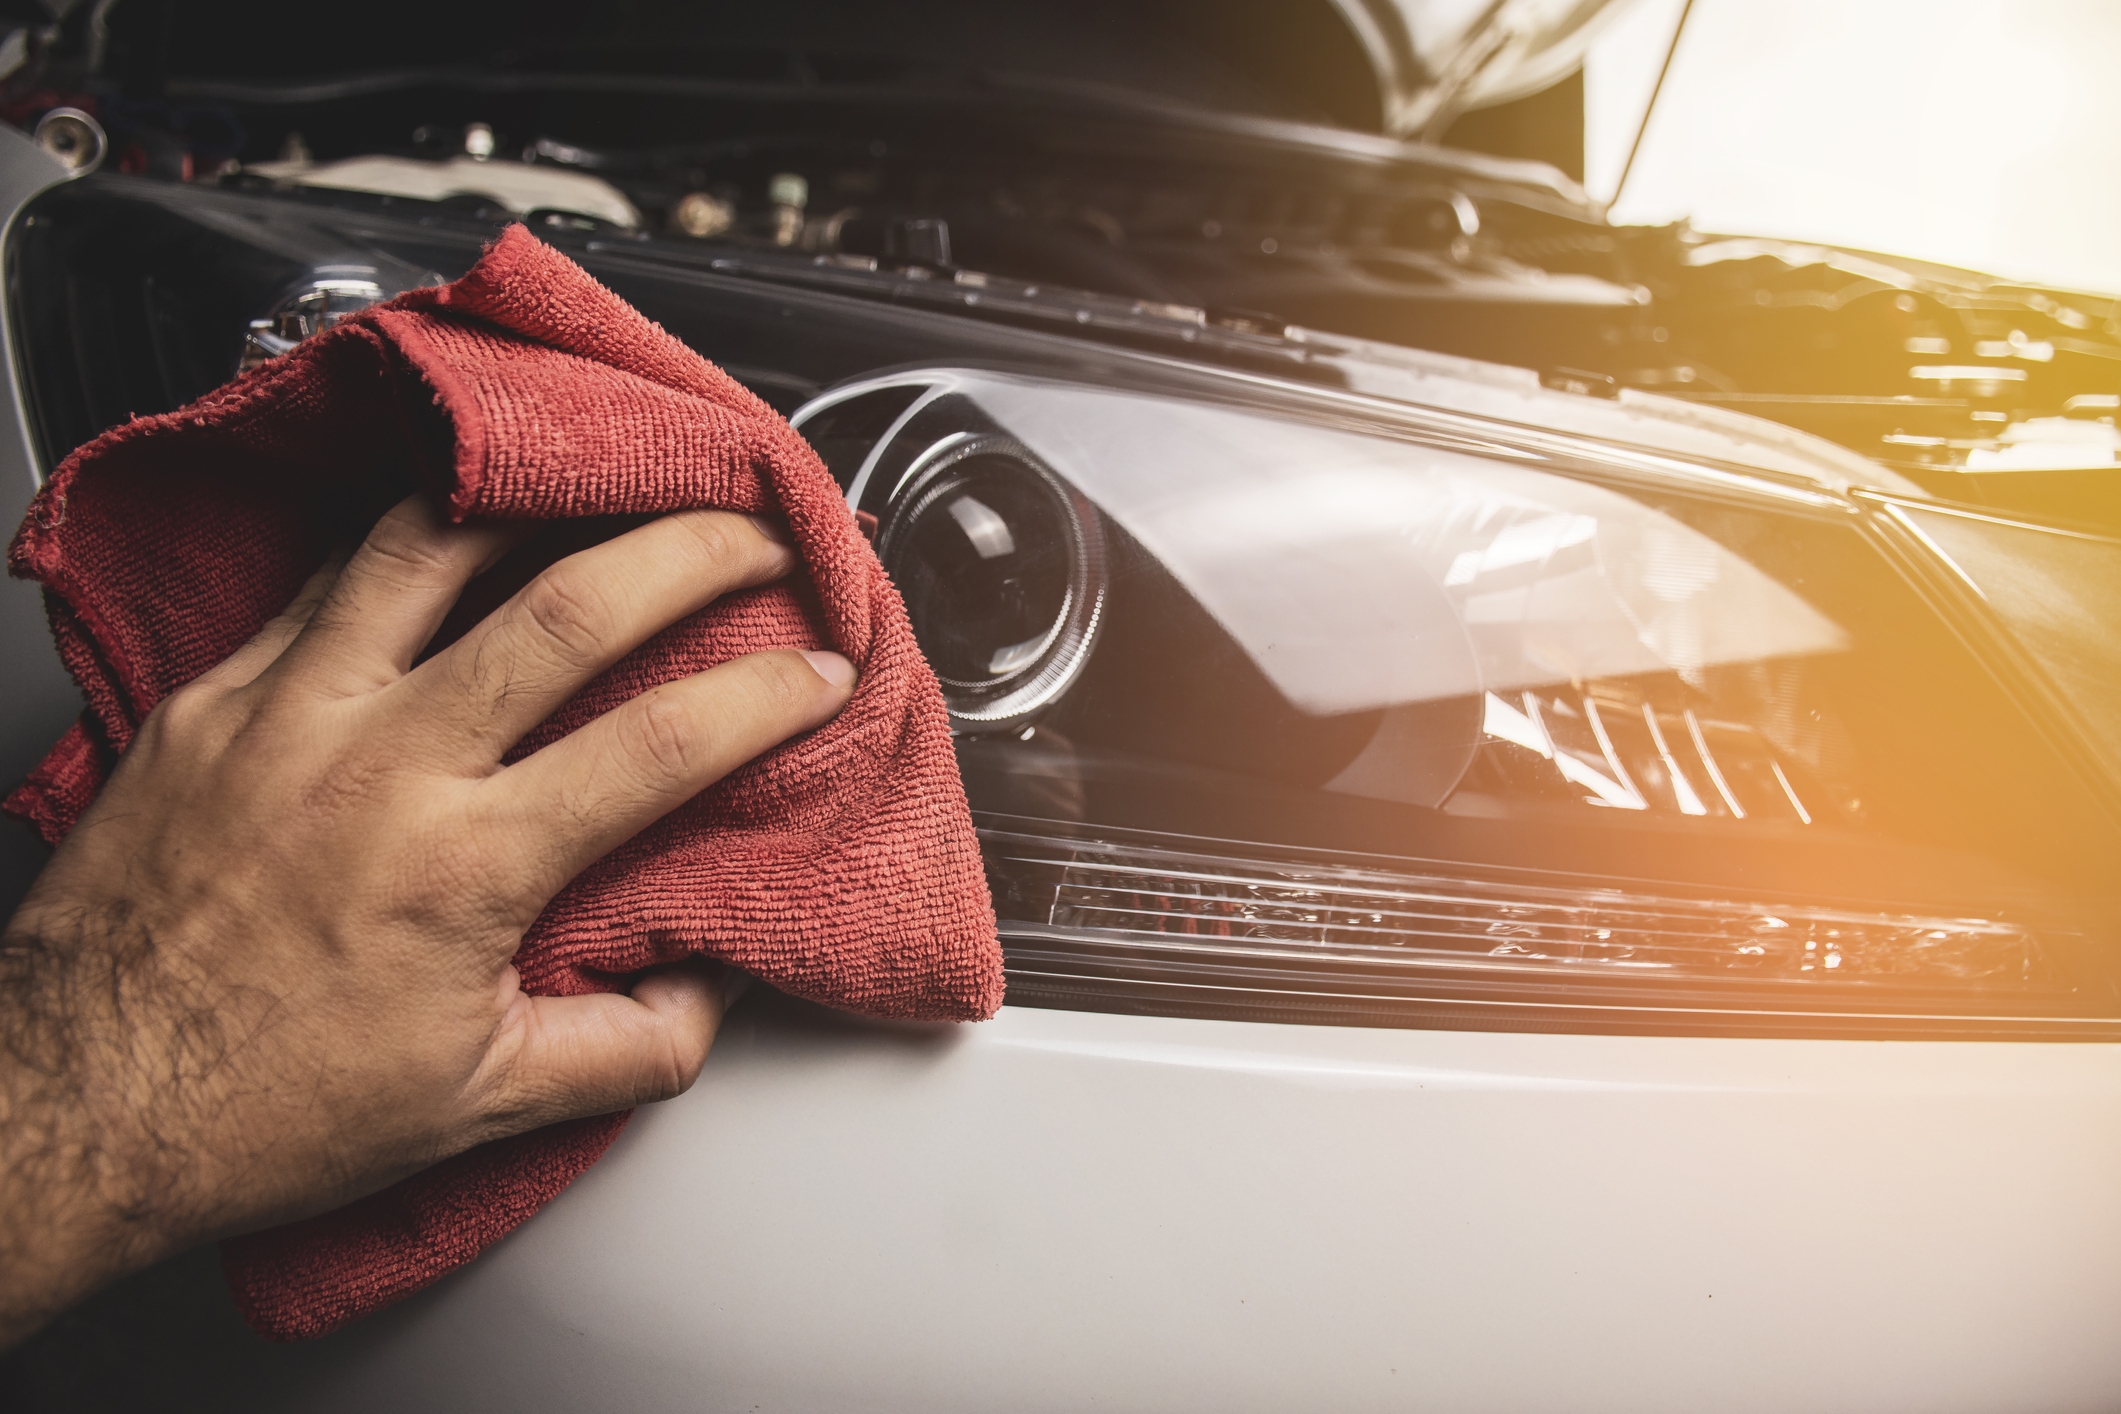 Cómo limpiar los faros del coche - Conoce estos consejos efectivos para  pulir los faros del vehículo